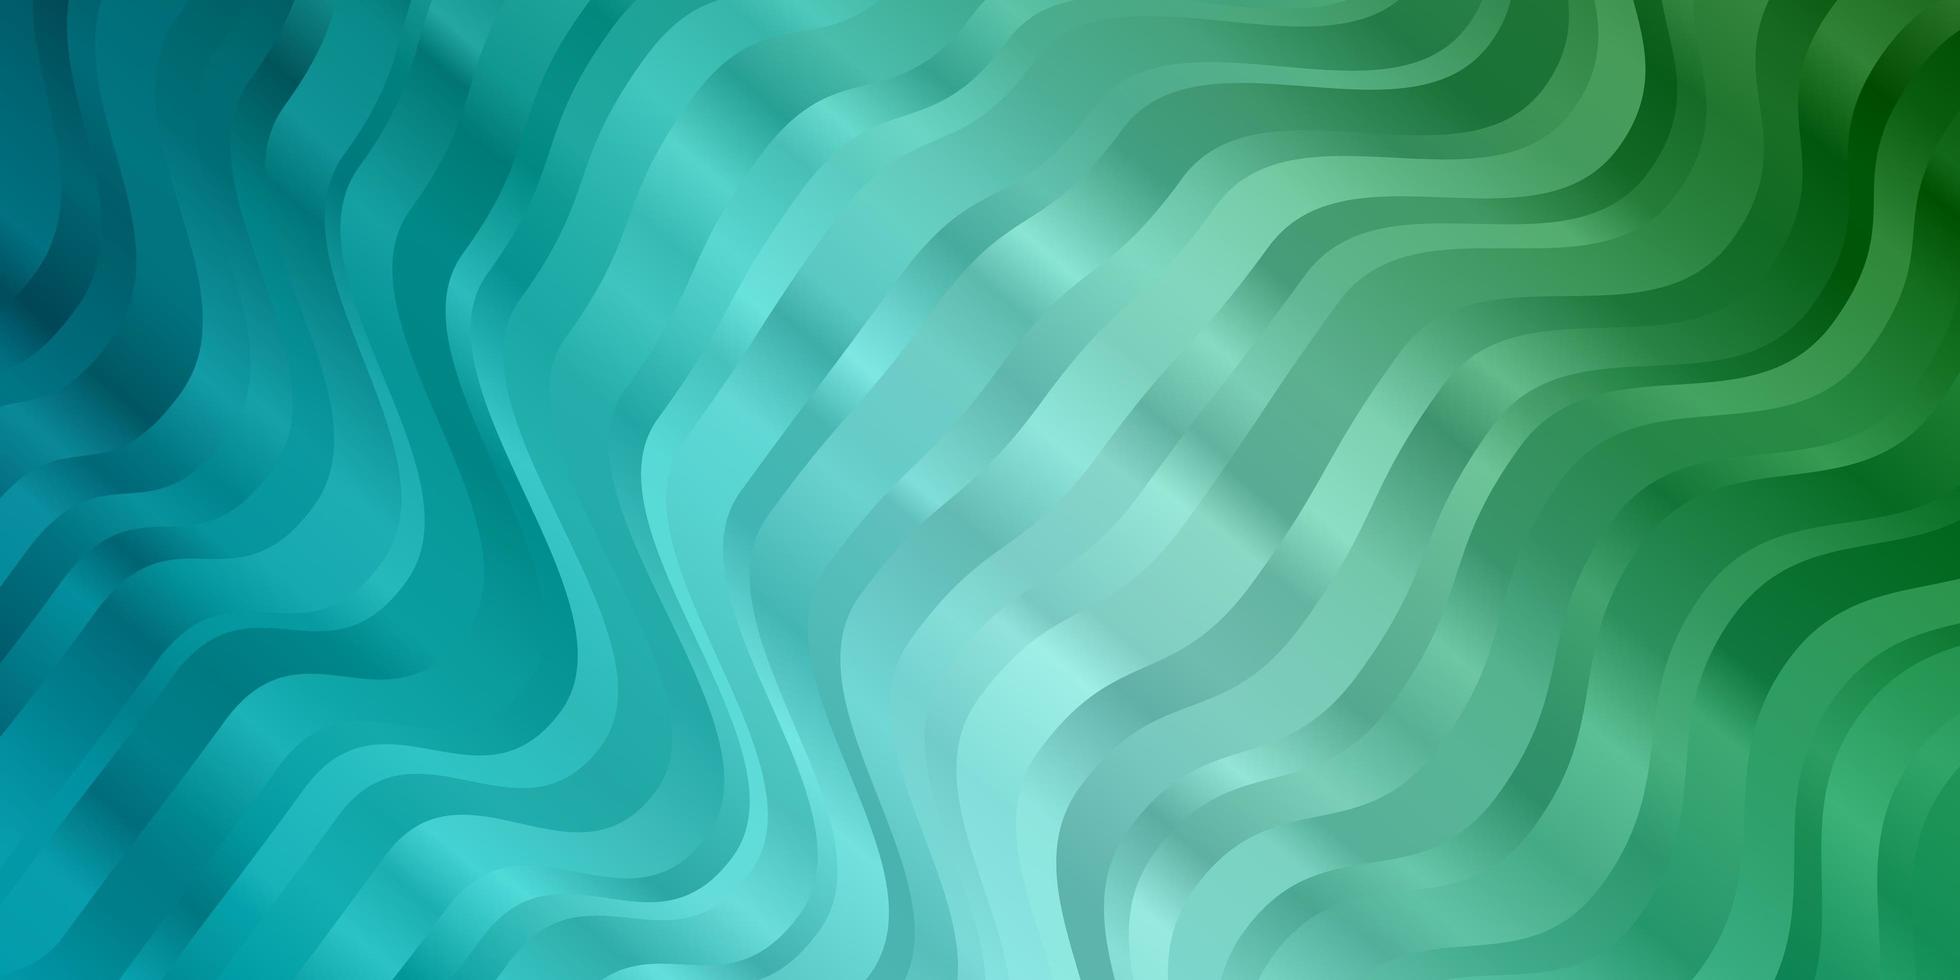 ljusblå grön vektormall med böjda linjer helt ny färgstark illustration med böjda linjer mönster för webbplatser målsidor vektor